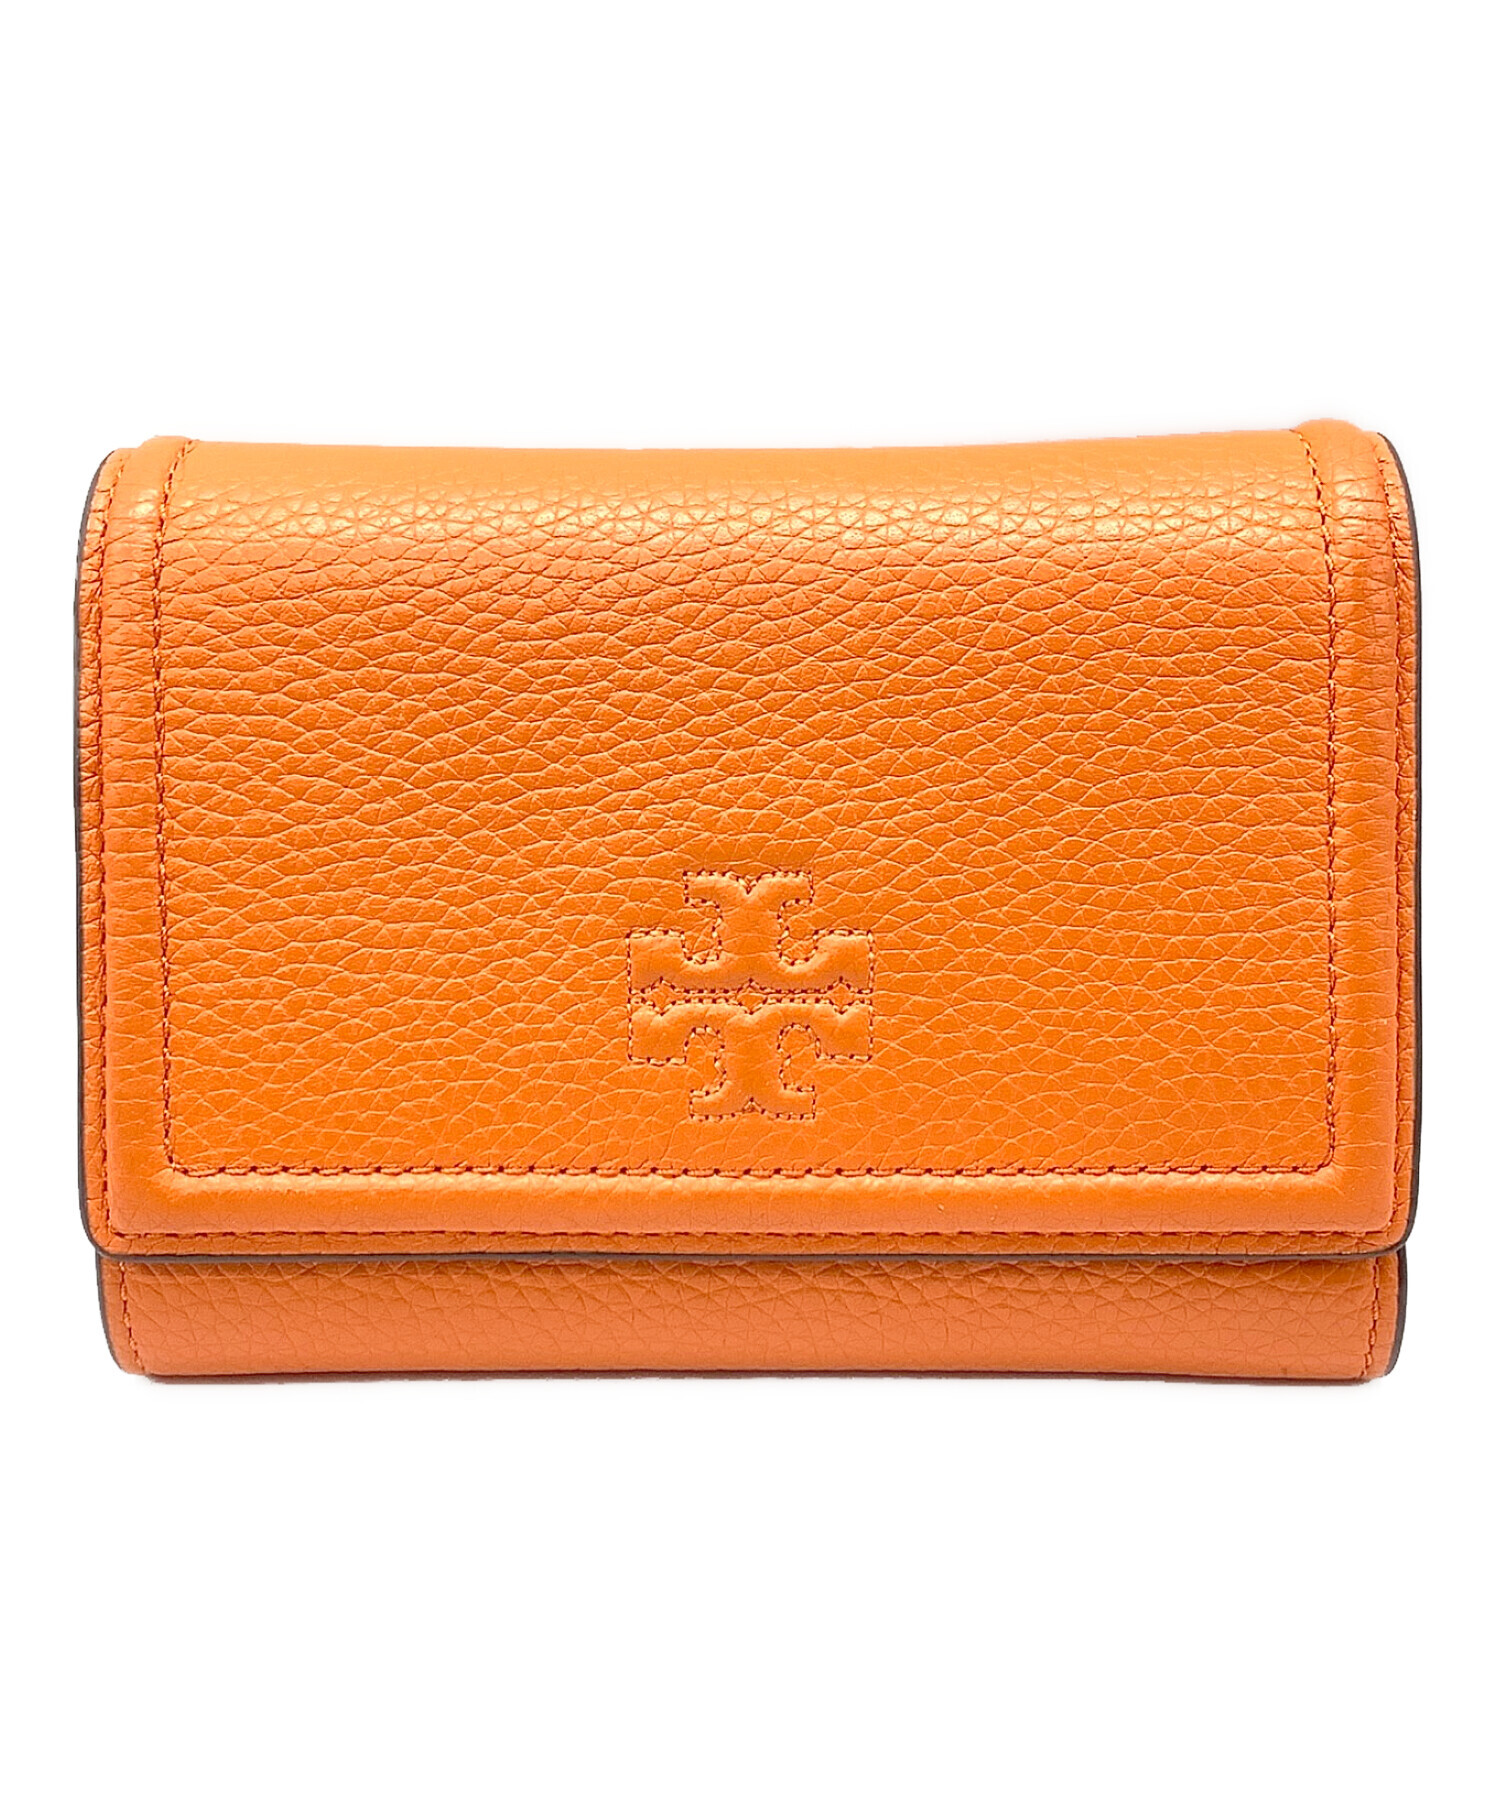 トリーバーチのオレンジ三つ折り財布 - 折り財布